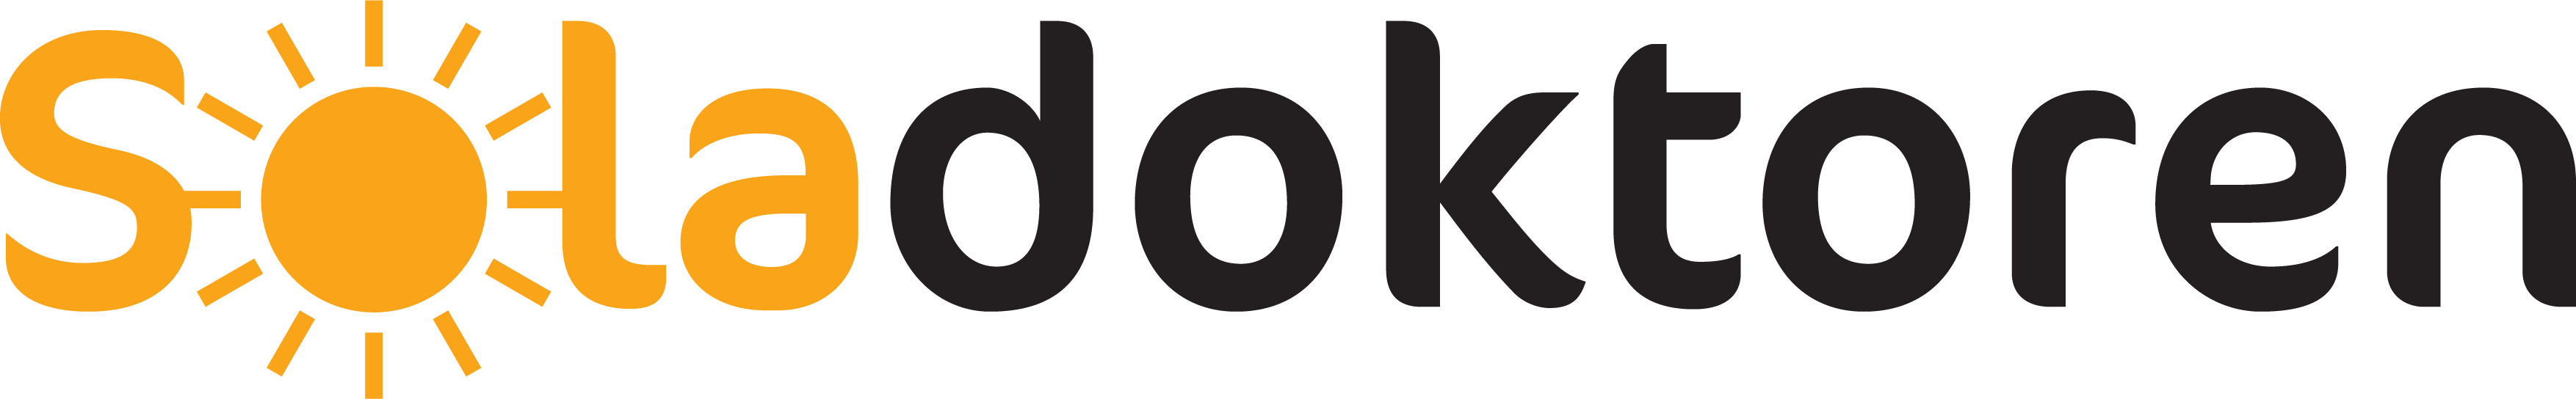 Soladoktoren logo